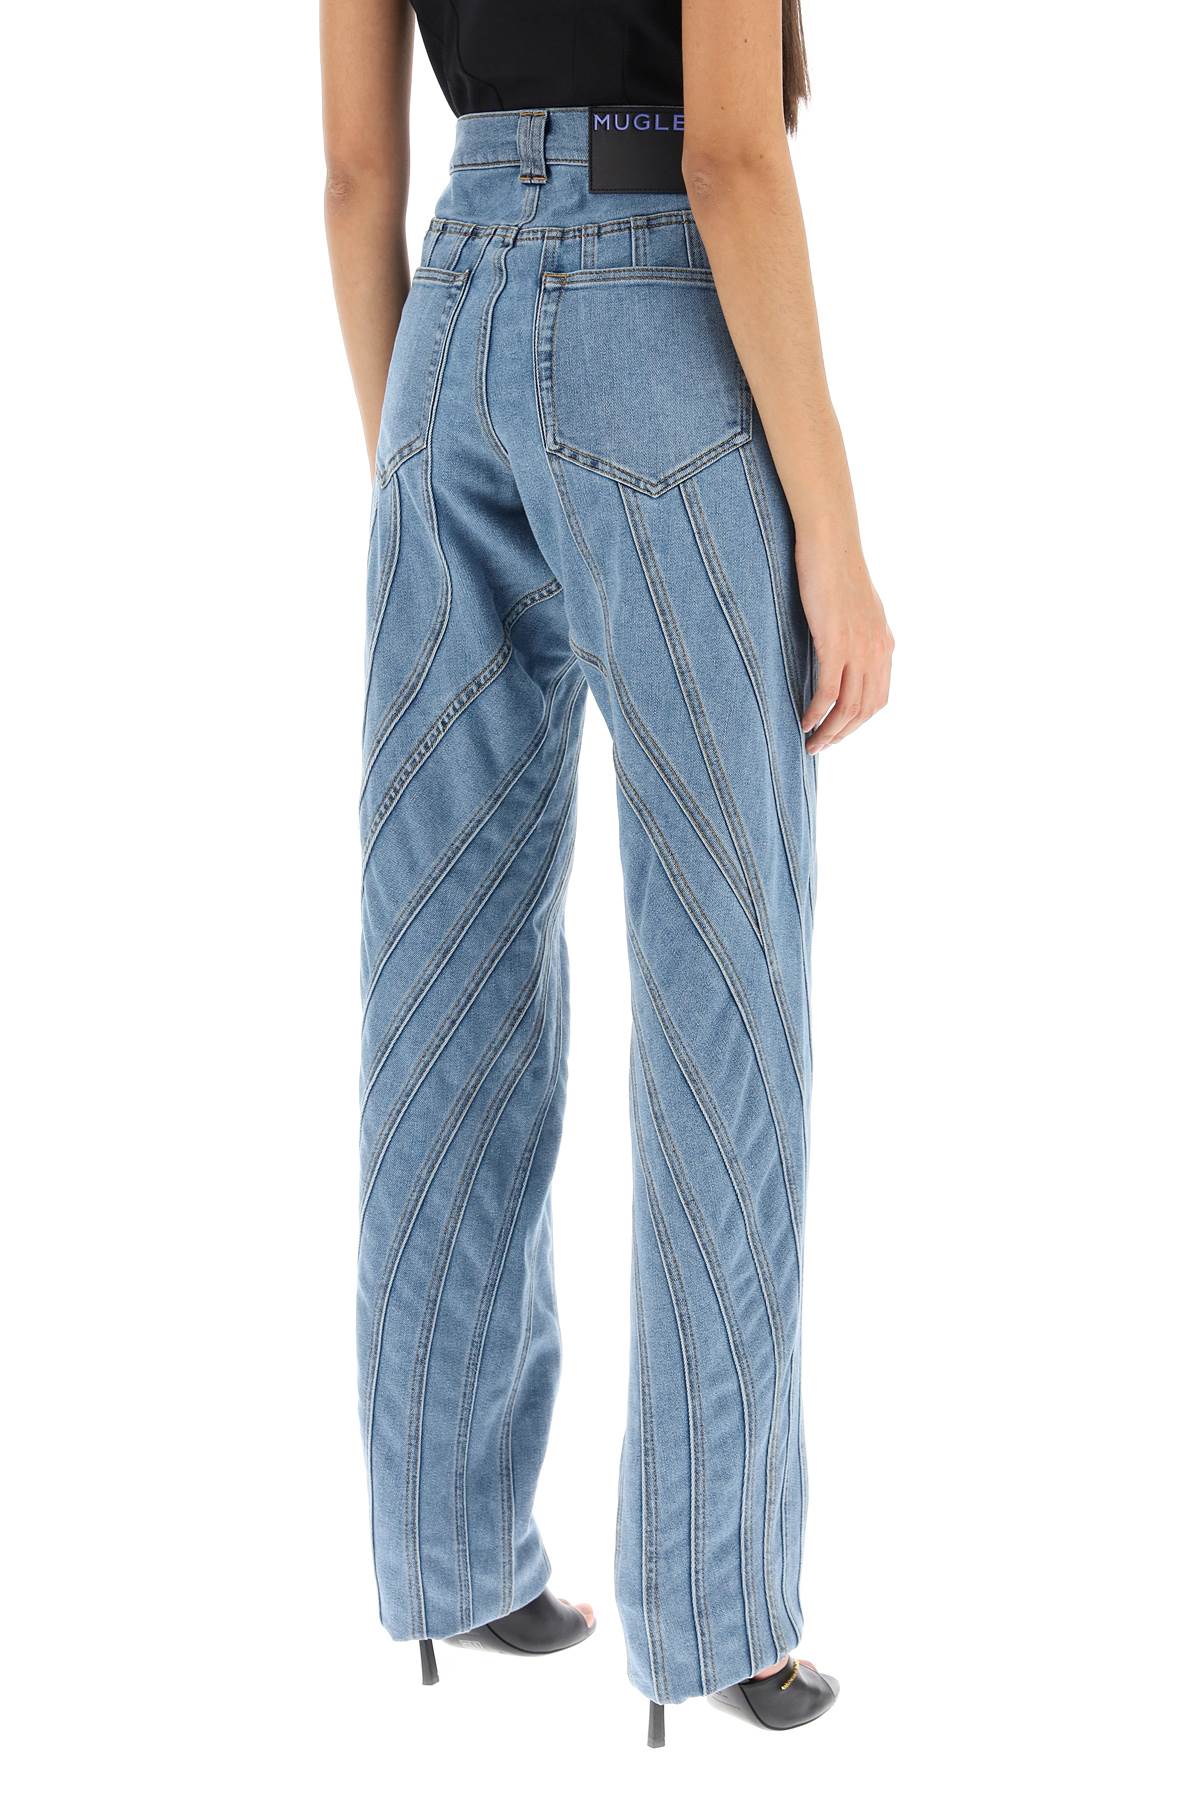 Mugler spiral baggy jeans-2